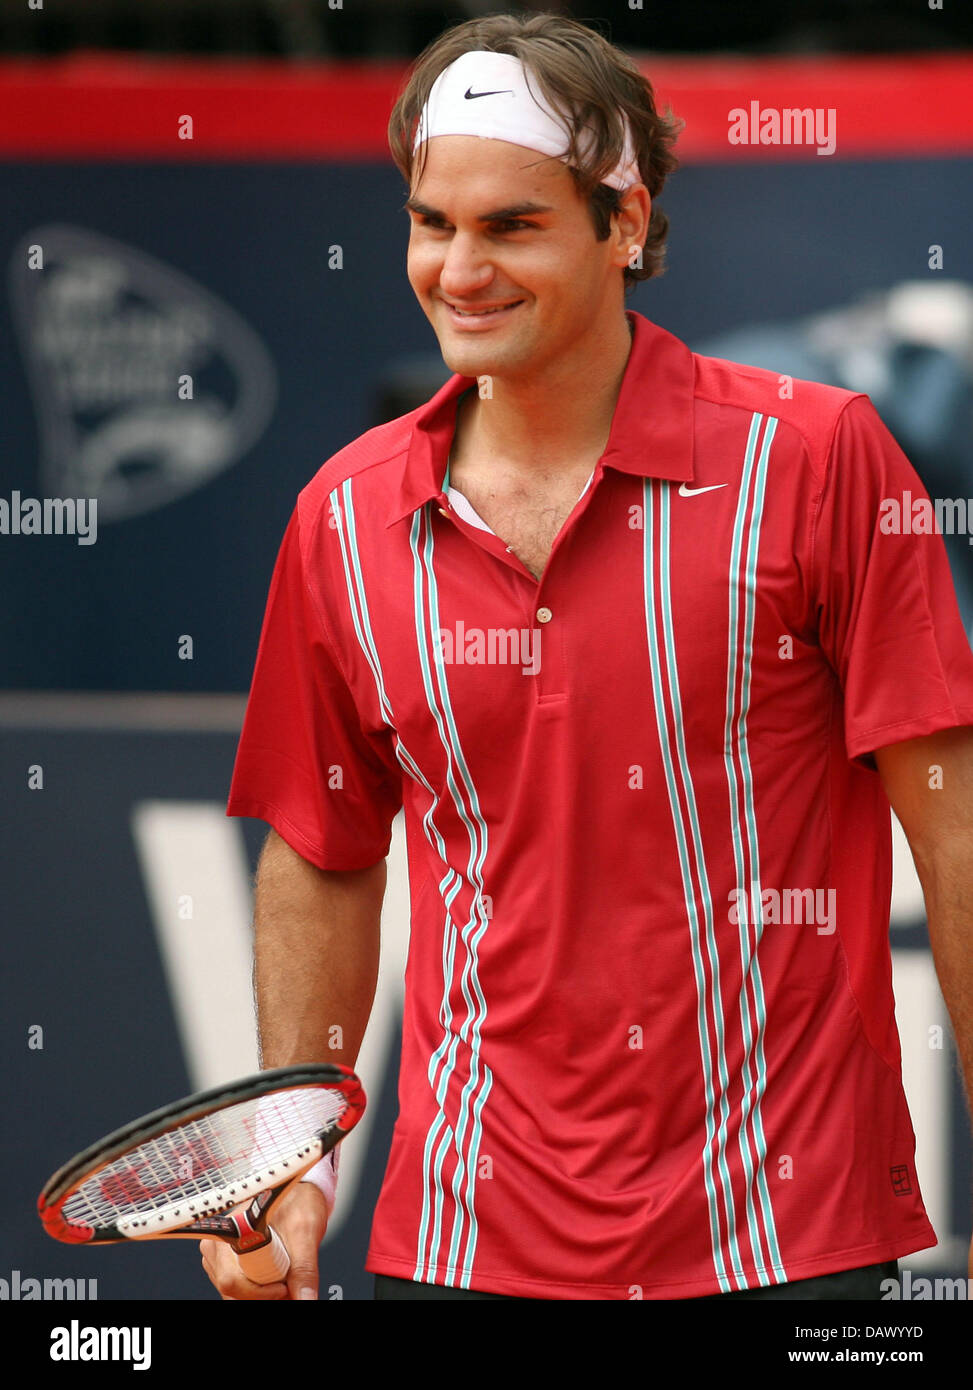 Schweizer Tennis lächelt pro Roger Federer in seinem Viertelfinale Match  gegen spanische David Ferrer bei den ATP Tennis Masters "Rothenbaum"  Stadion in Hamburg, Deutschland, 18. Mai 2007. Federer besiegt Ferrer 6-3,  4-6